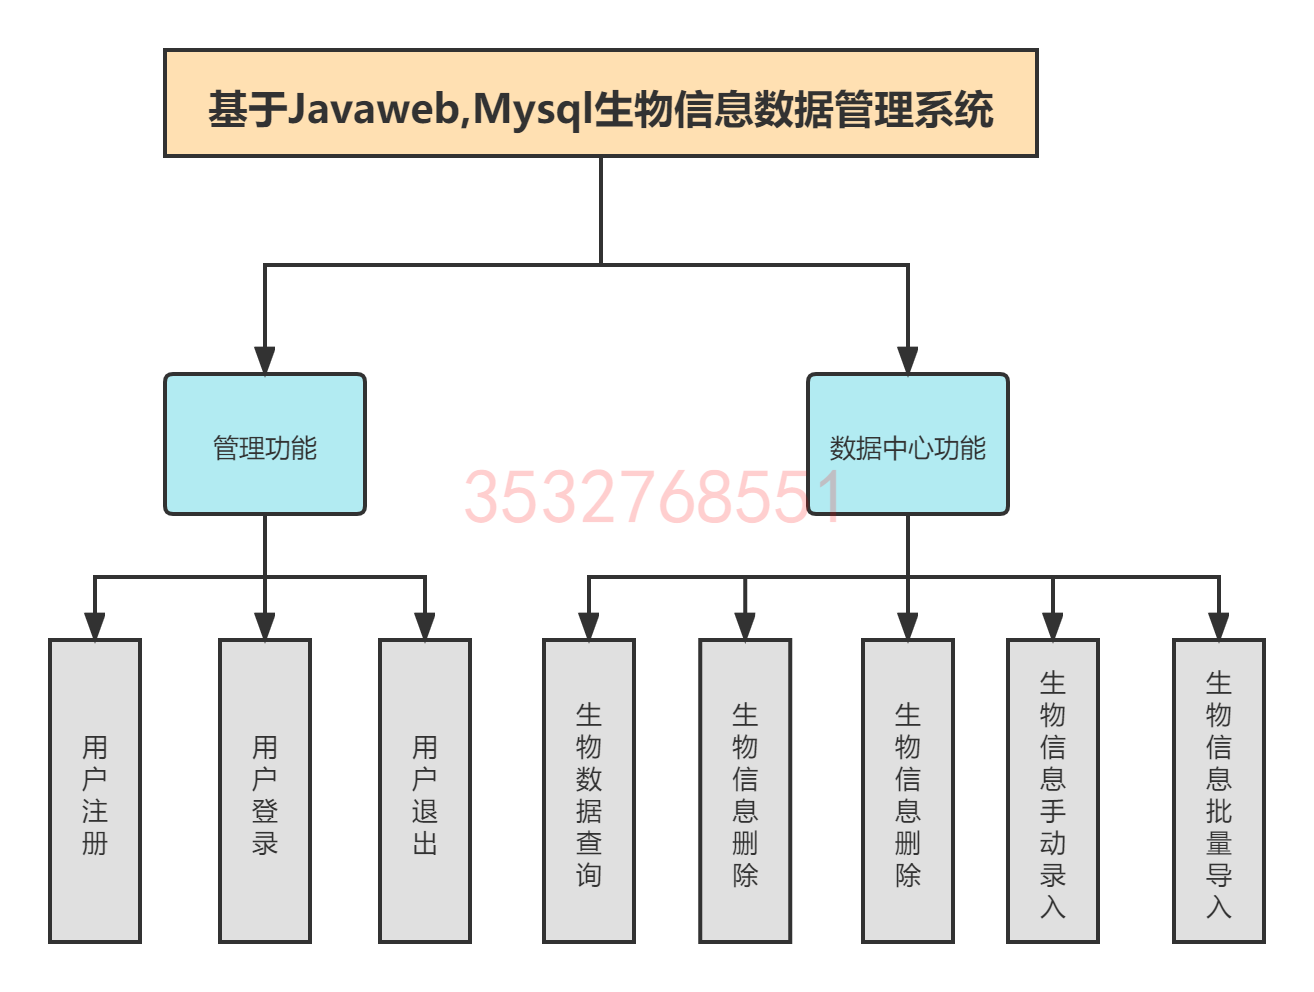 基于Javaweb,Mysql生物信息数据管理系统